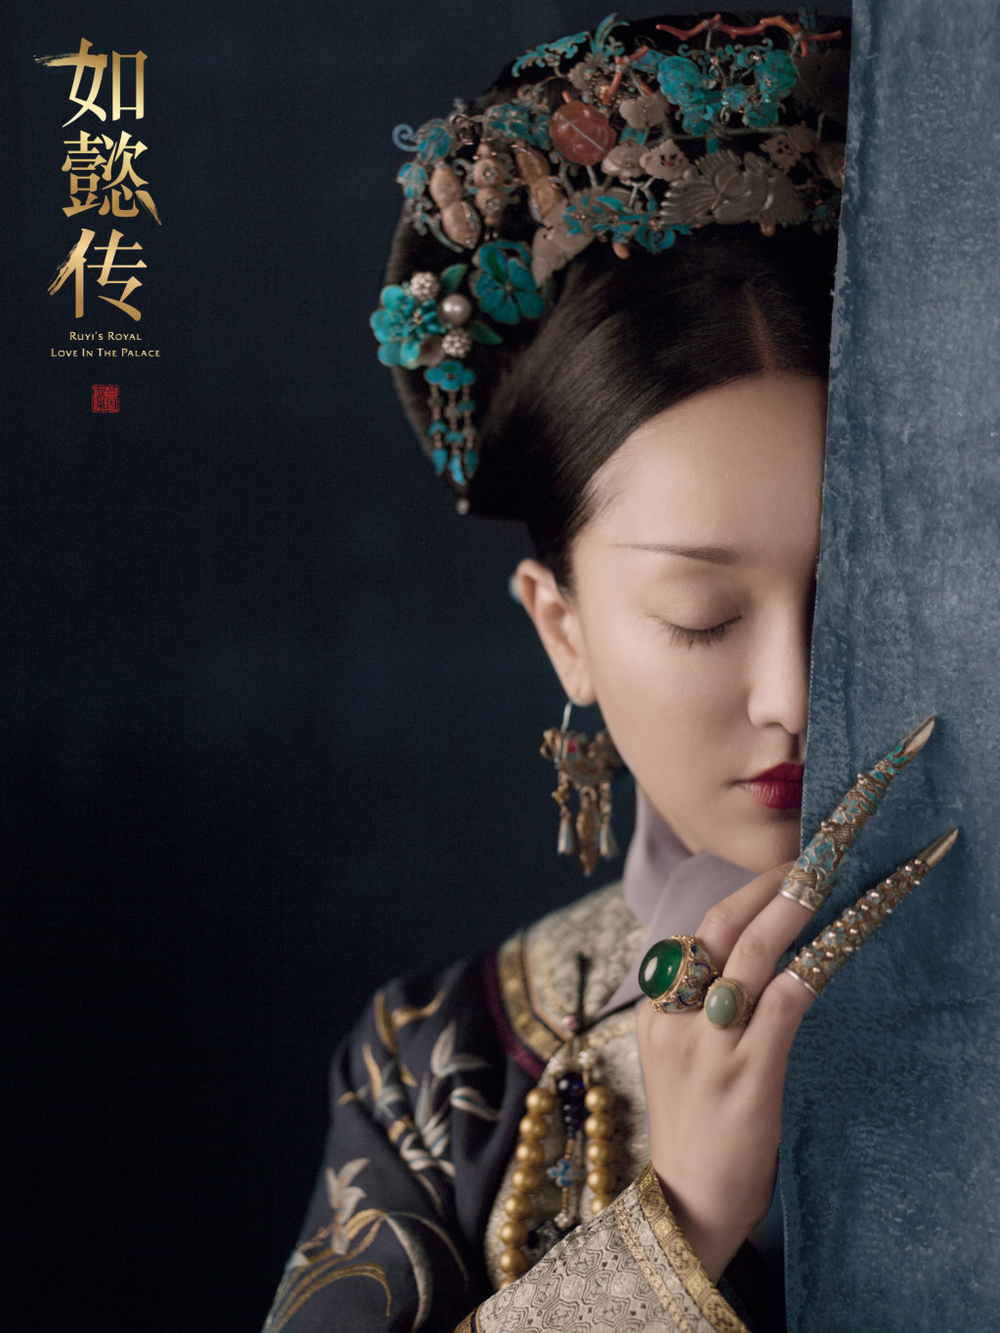  
Bộ phim Như Ý Truyện lấy hình mẫu Kế Hoàng Hậu làm nhân vật chính do Châu Tấn thủ vai.